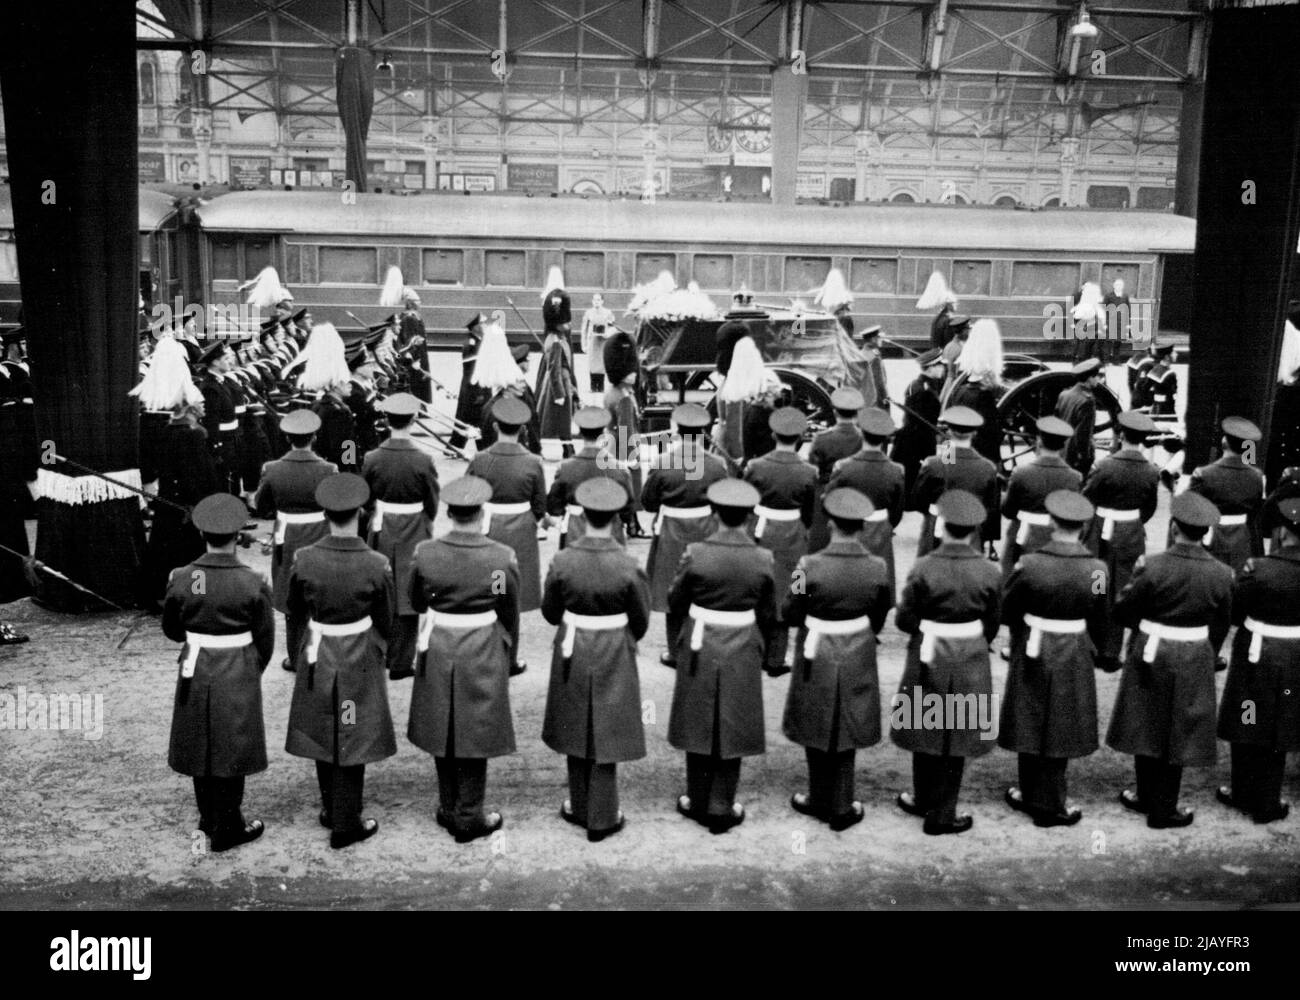 Das Begräbnis von König George VI Abfahrt von Paddington - der Waffenwagen mit dem Royal Coffin am Bahnhof Paddington. Von dort aus wurde der Royal Coffin mit dem Zug nach Windsor gebracht. Beachten Sie, dass die Säulen der Station schwarz drapiert sind. 15. Februar 1952. (Foto von Paul Popper, Paul Popper Ltd.). Stockfoto